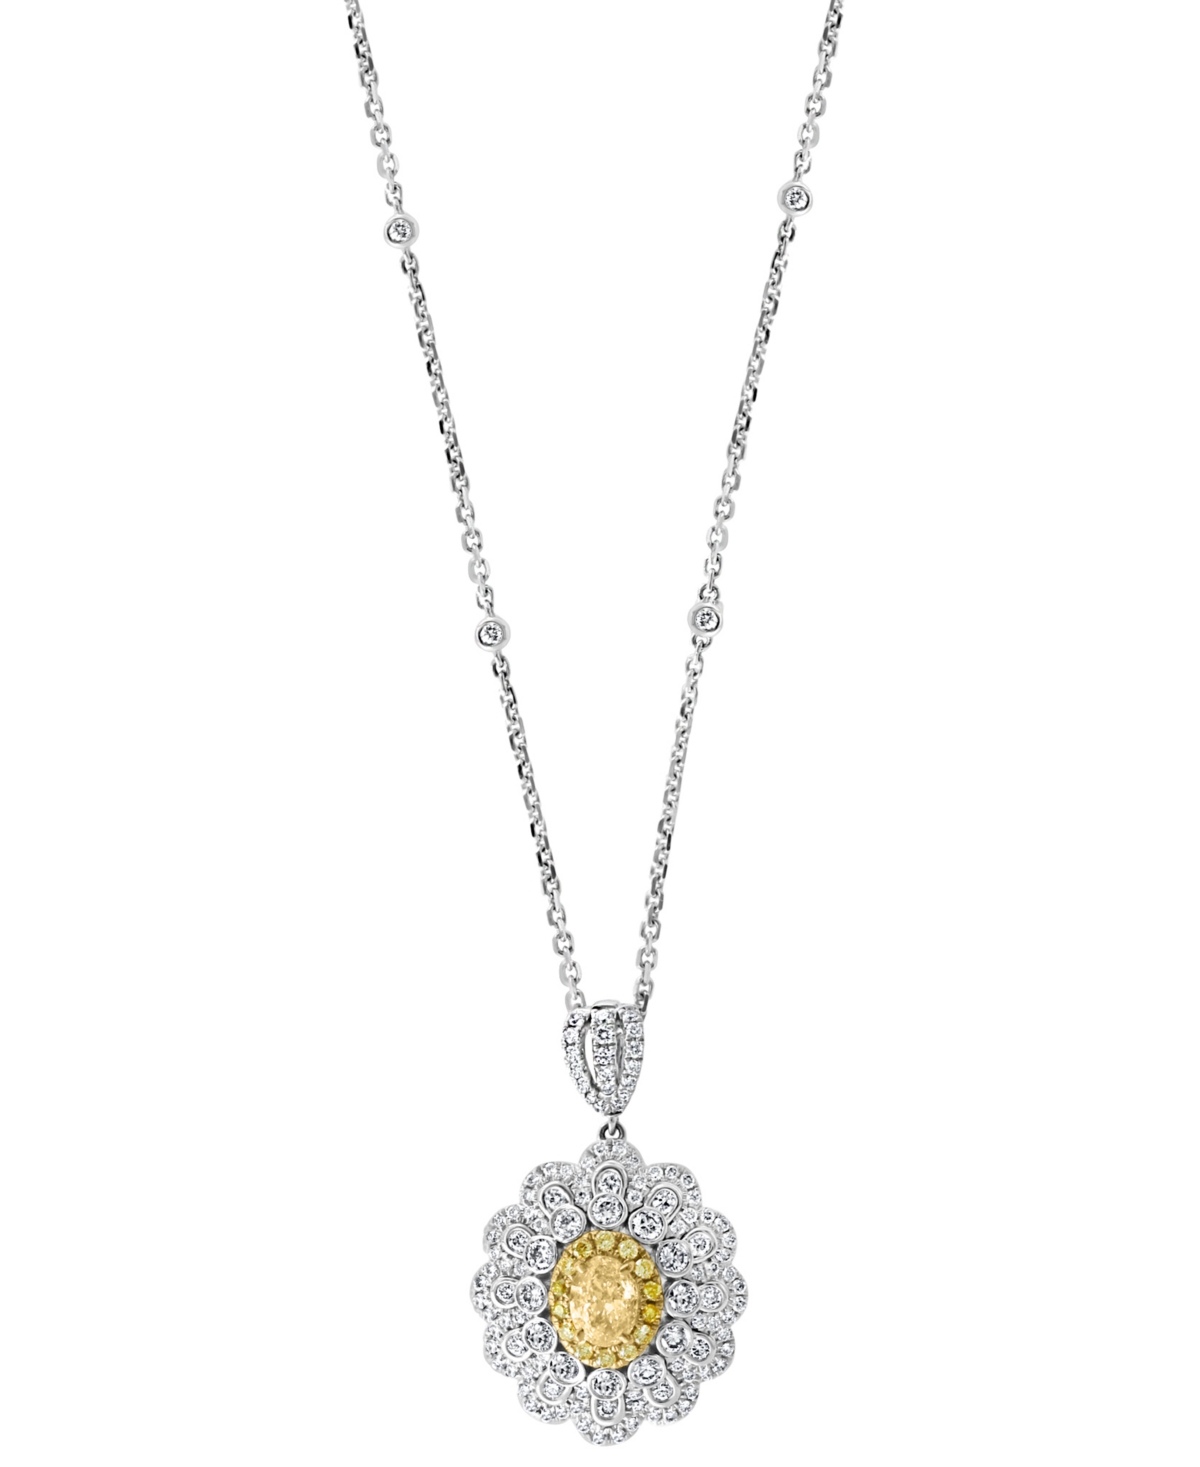 Effy Yellow Diamond (7/8 ct. t.w.) & White Diamond (1-1/6 ct. t.w.) Pendant Necklace in 18k Two-Tone Gold - White Gold